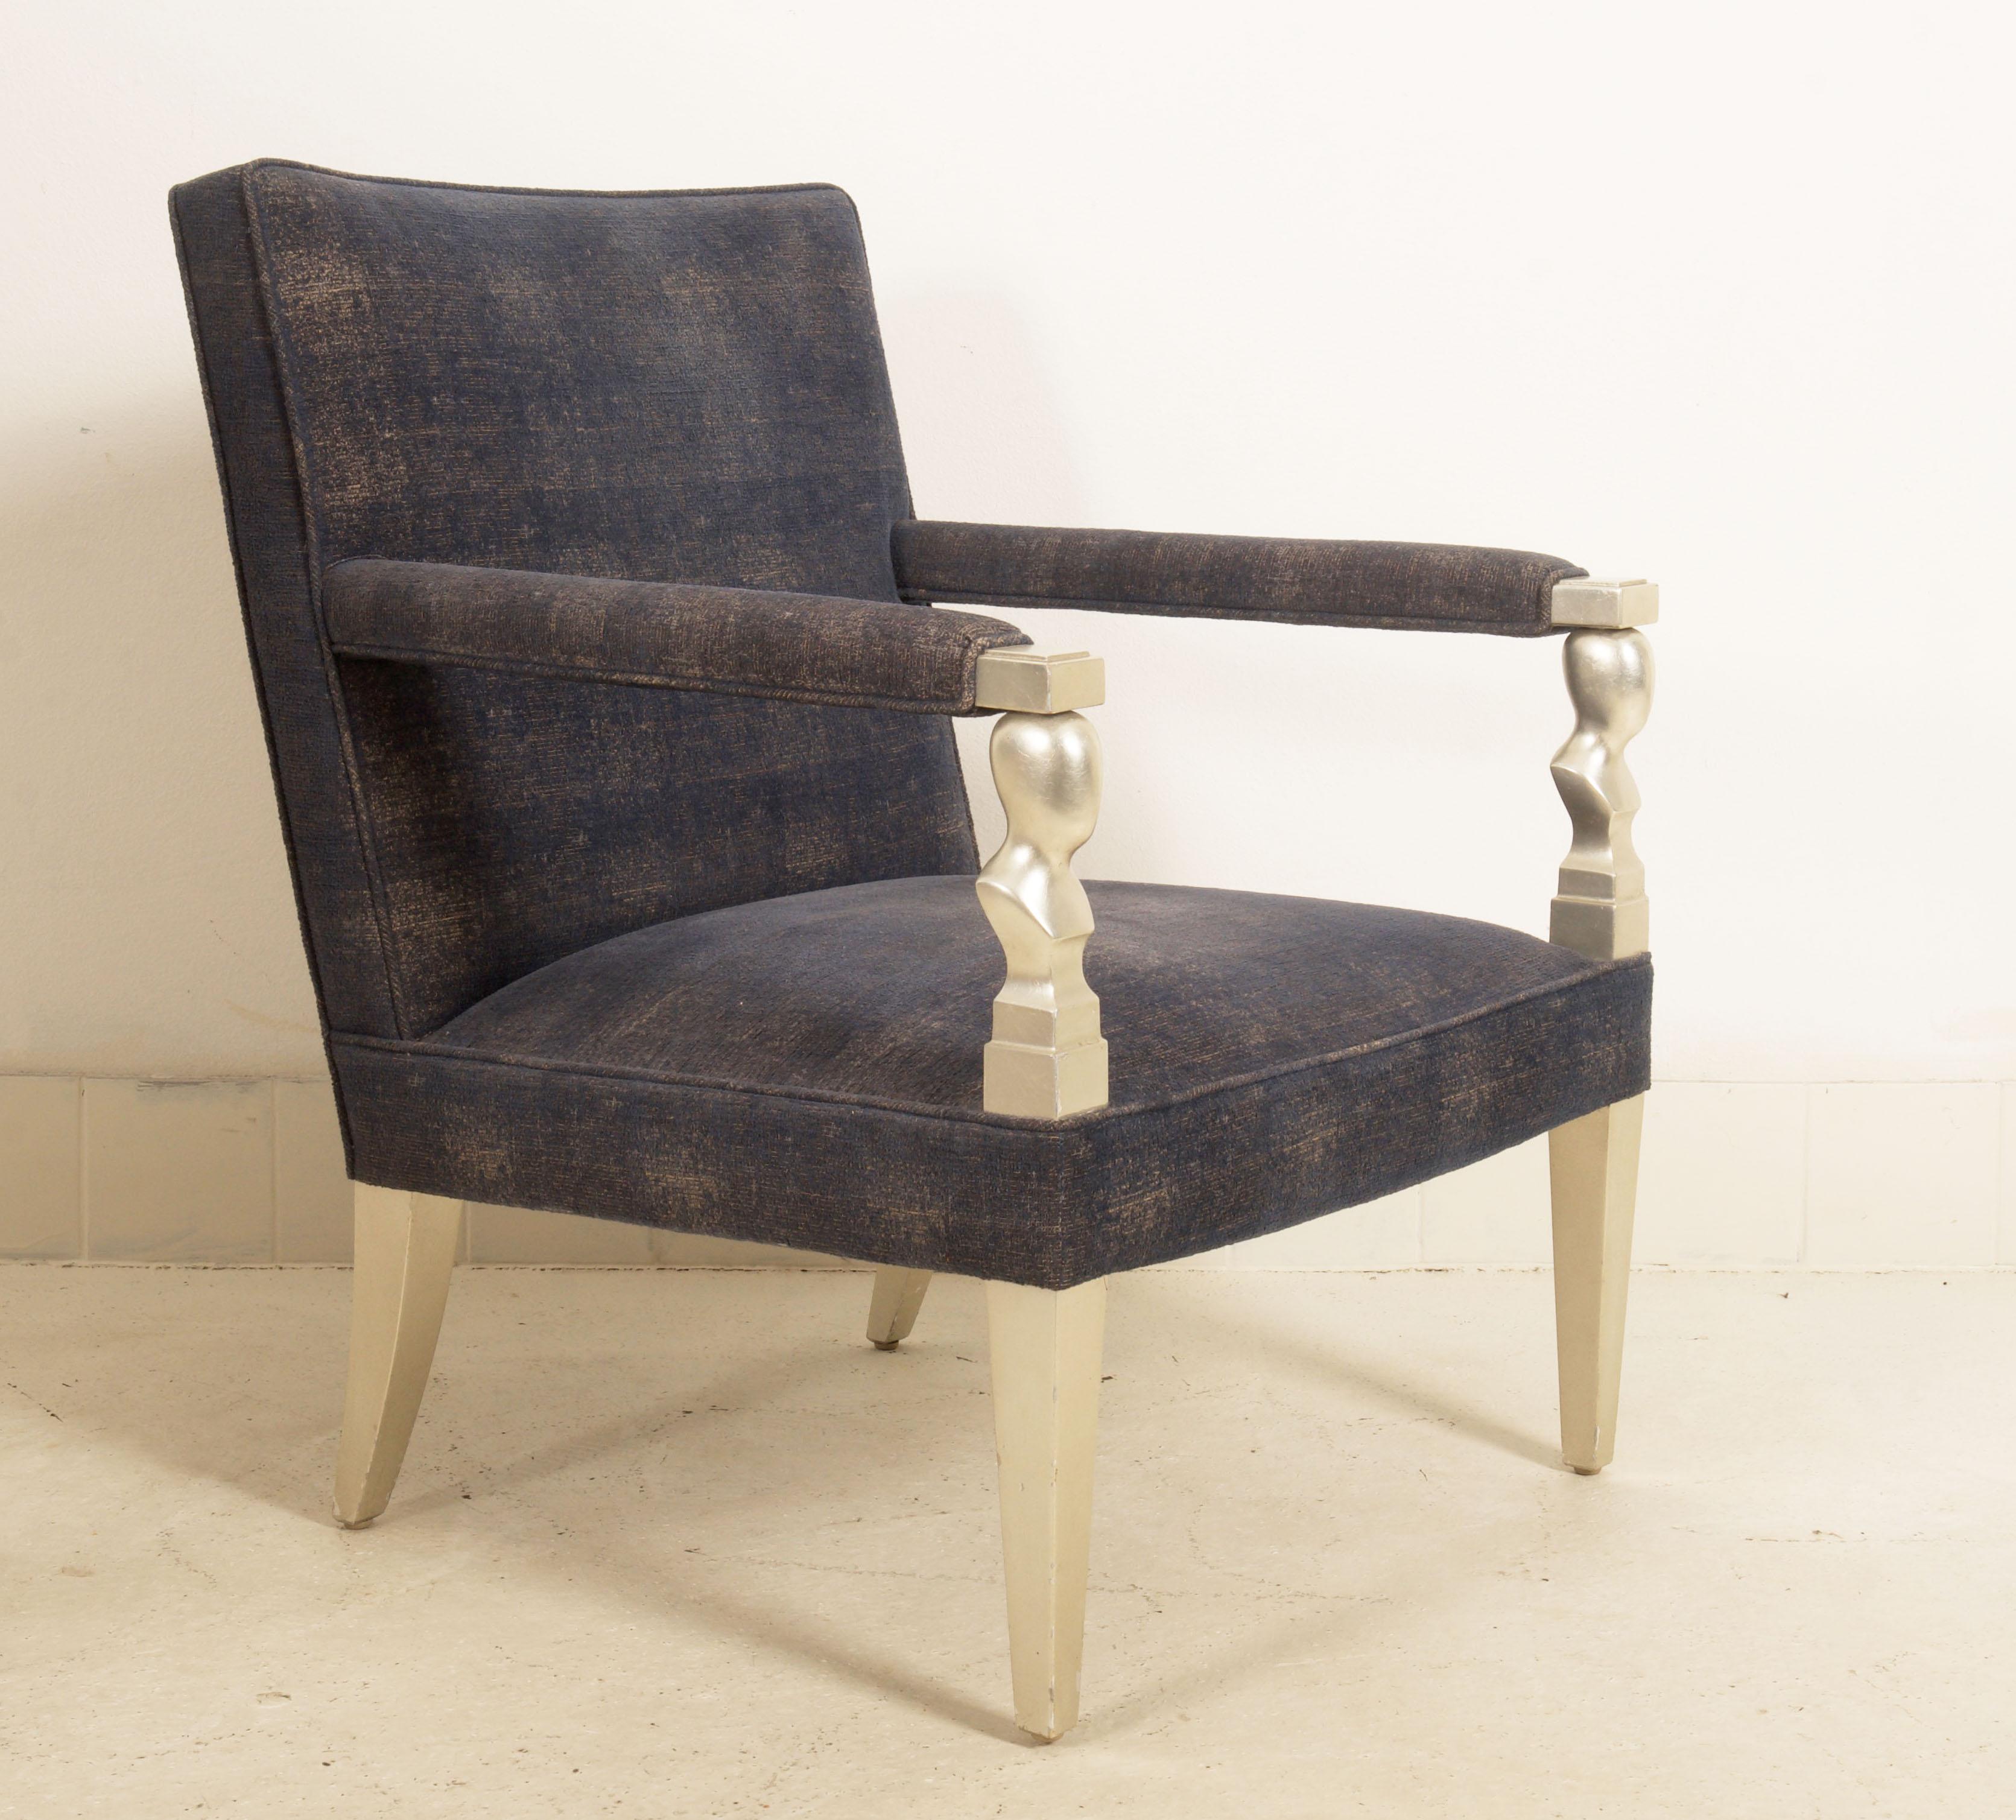 Cadre en bois de style Brancusi, recouvert d'un tissu bleu-argenté (gris). Conçu en 1980 par John Hutton pour Donghia. 